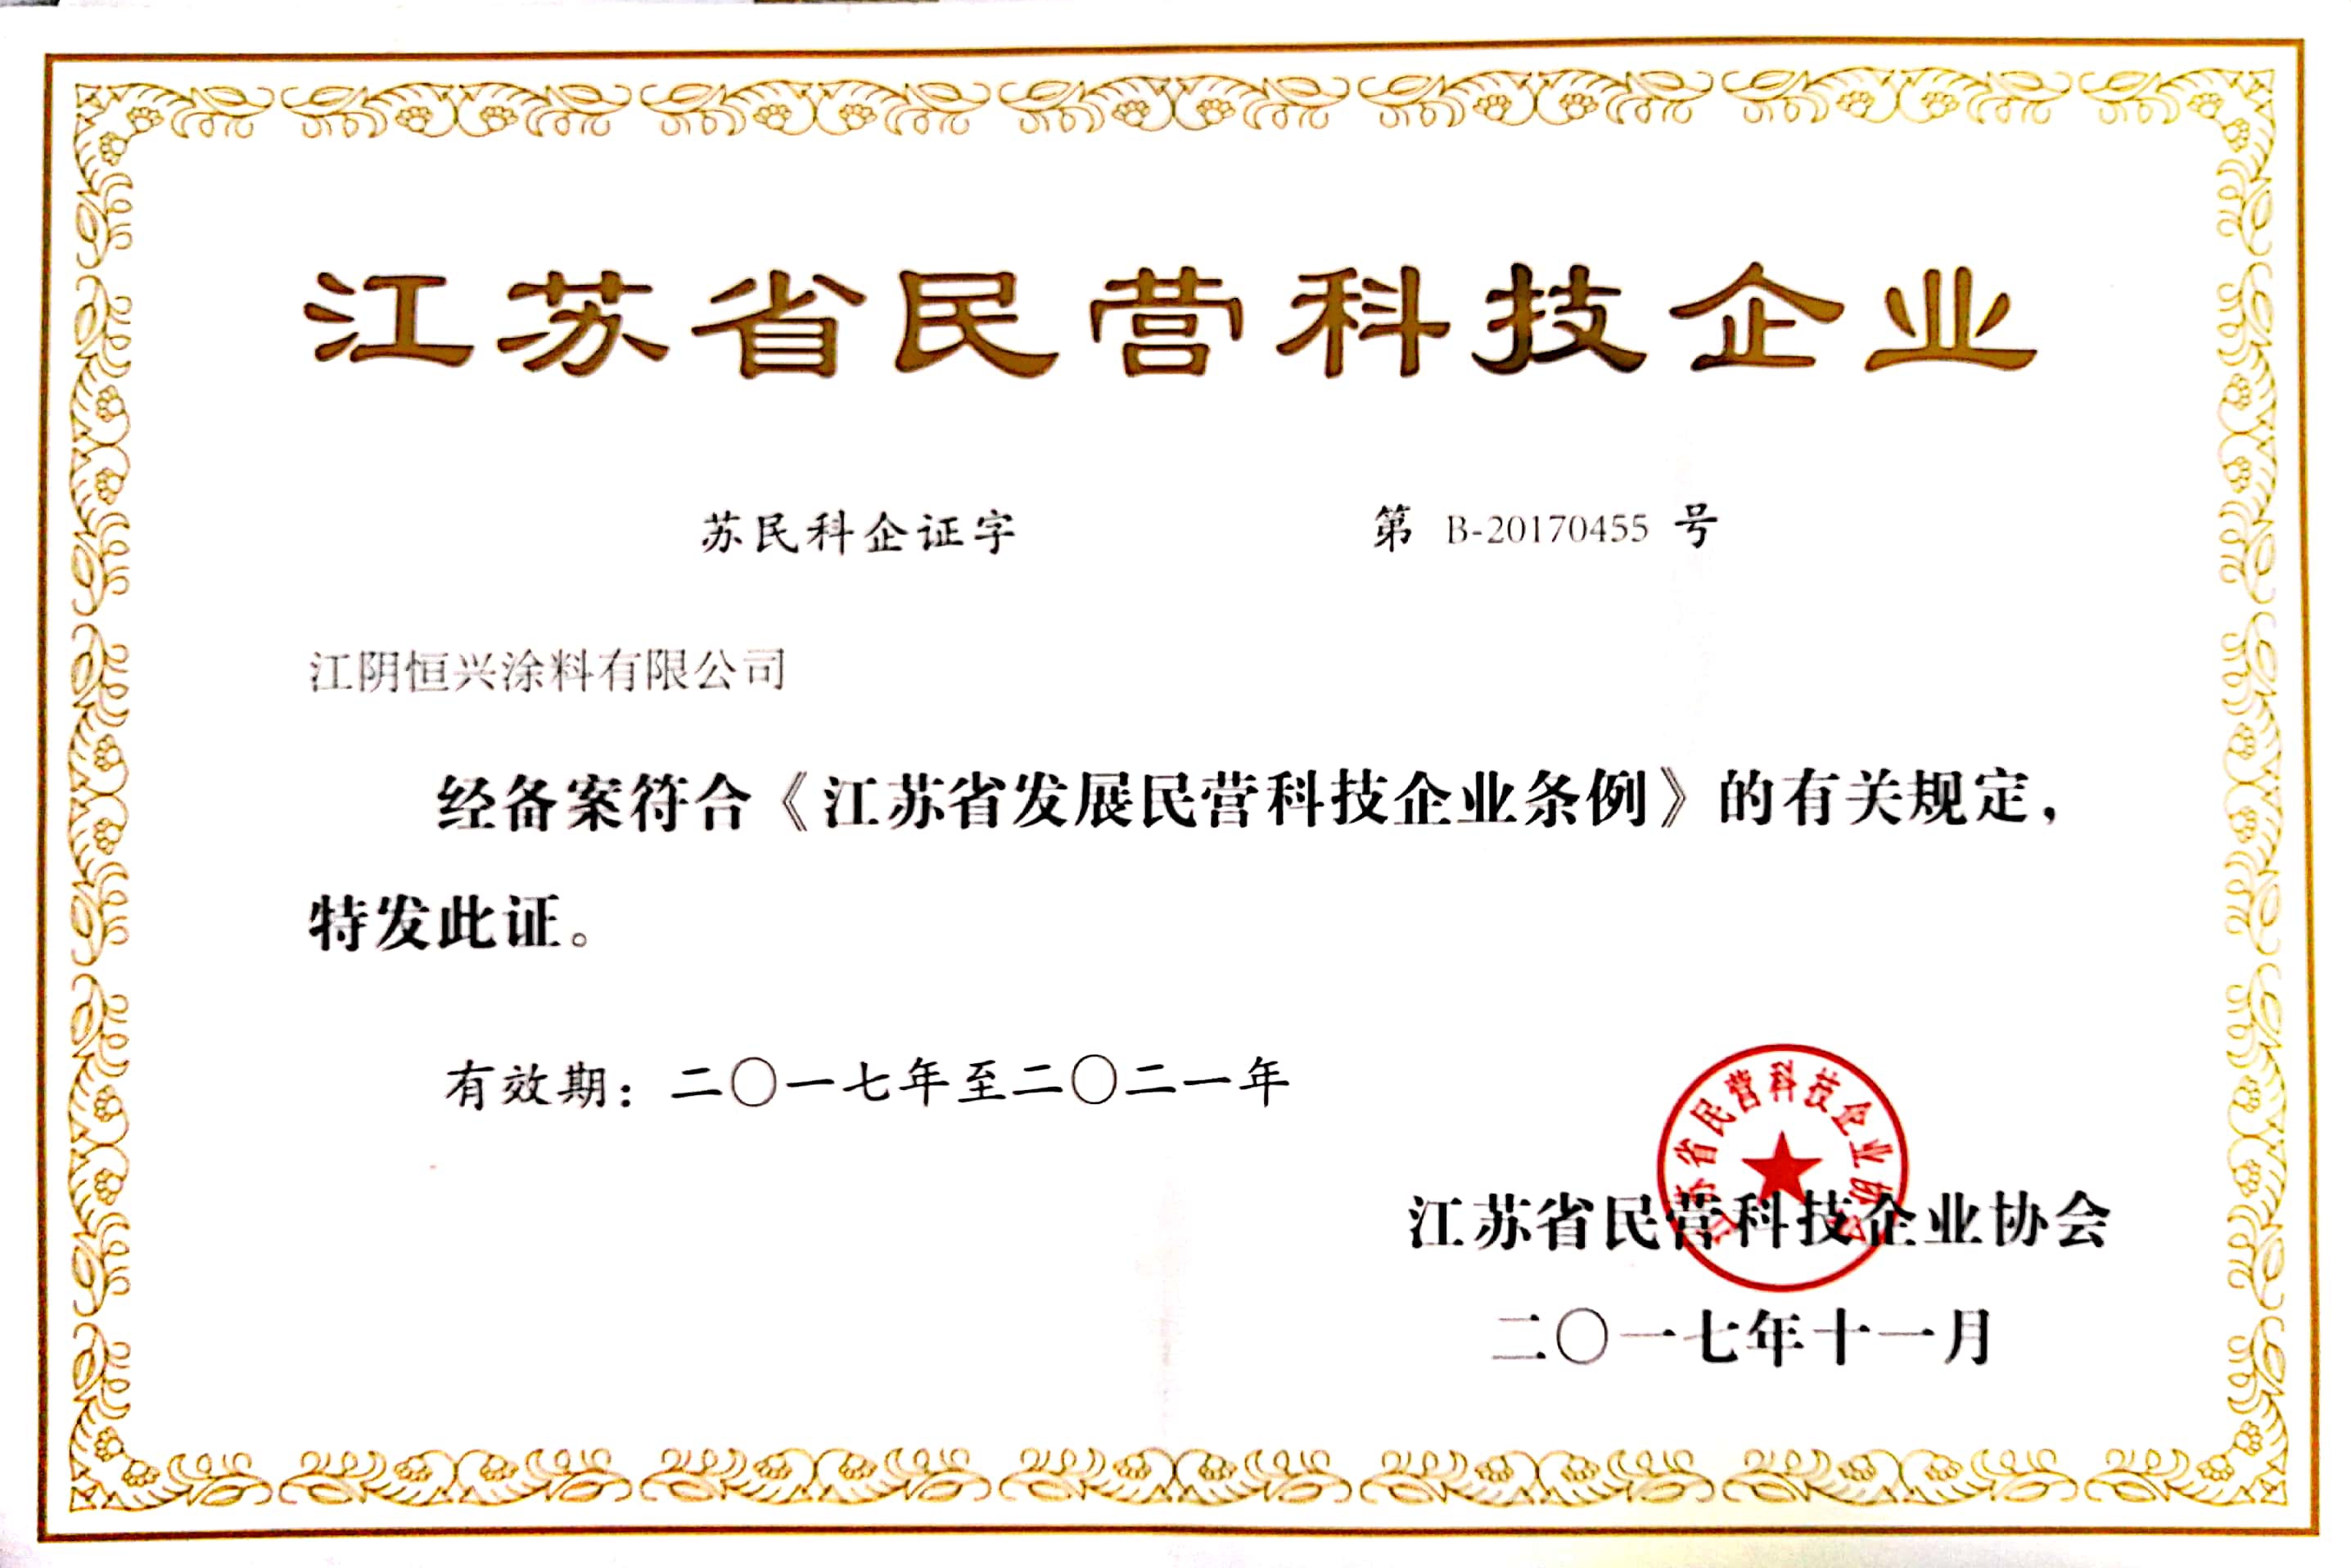 Jiangsu Province private technology enterprise certificate